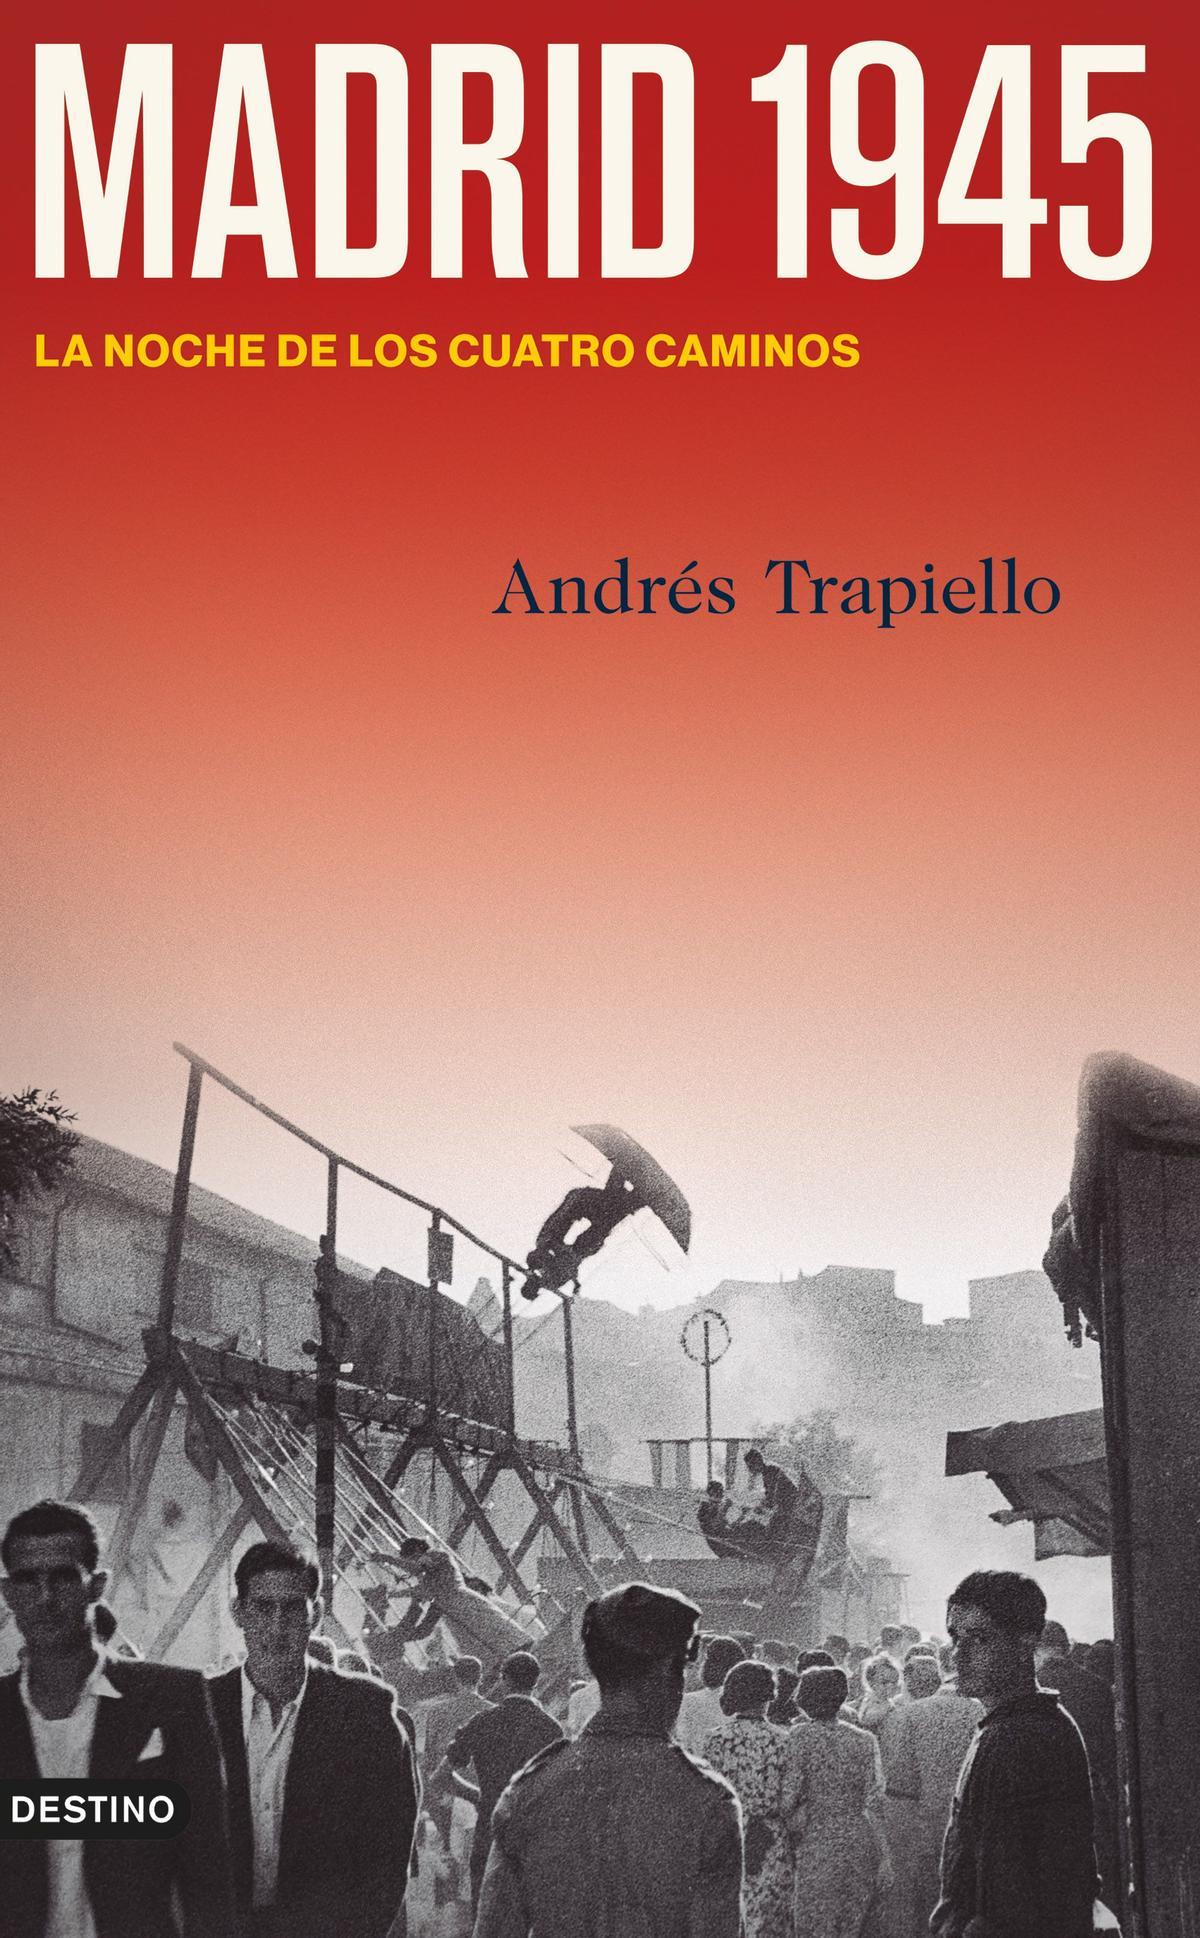 Portada del libro de Andrés Trapiello ‘Madrid. 1945. La noche de los cuatro caminos’